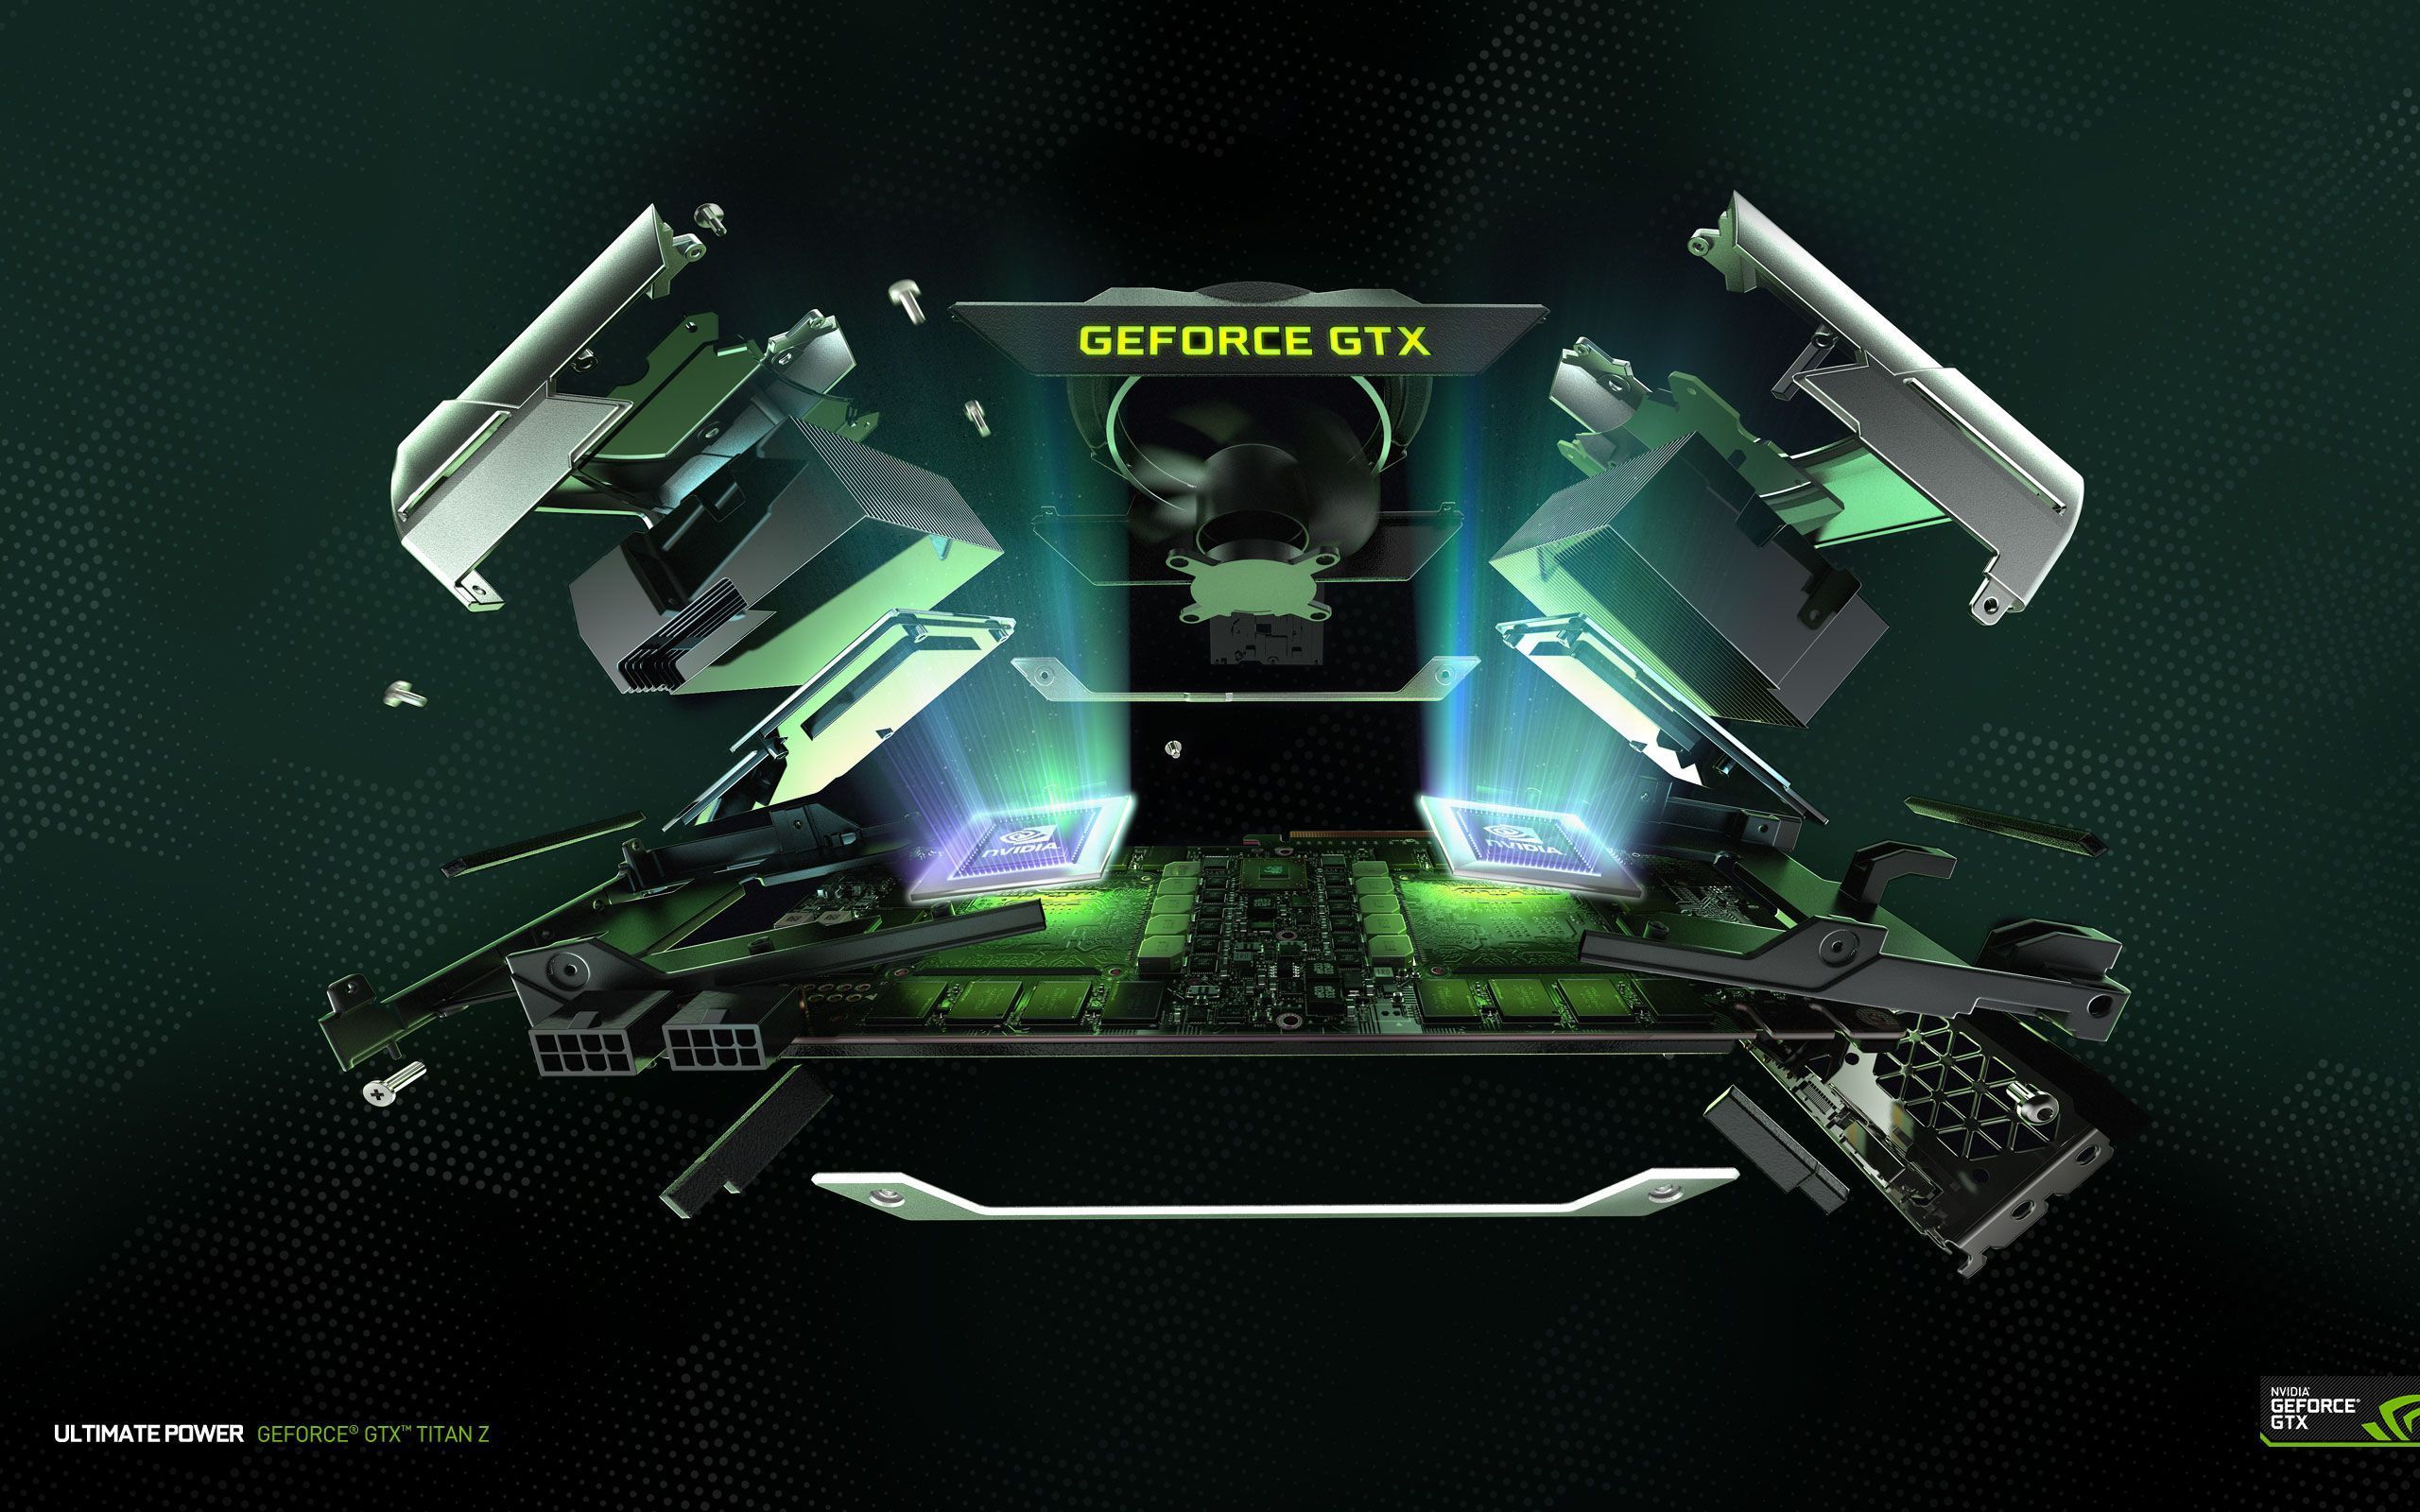 Download GeForce GTX TITAN Z Wallpapers | GeForce